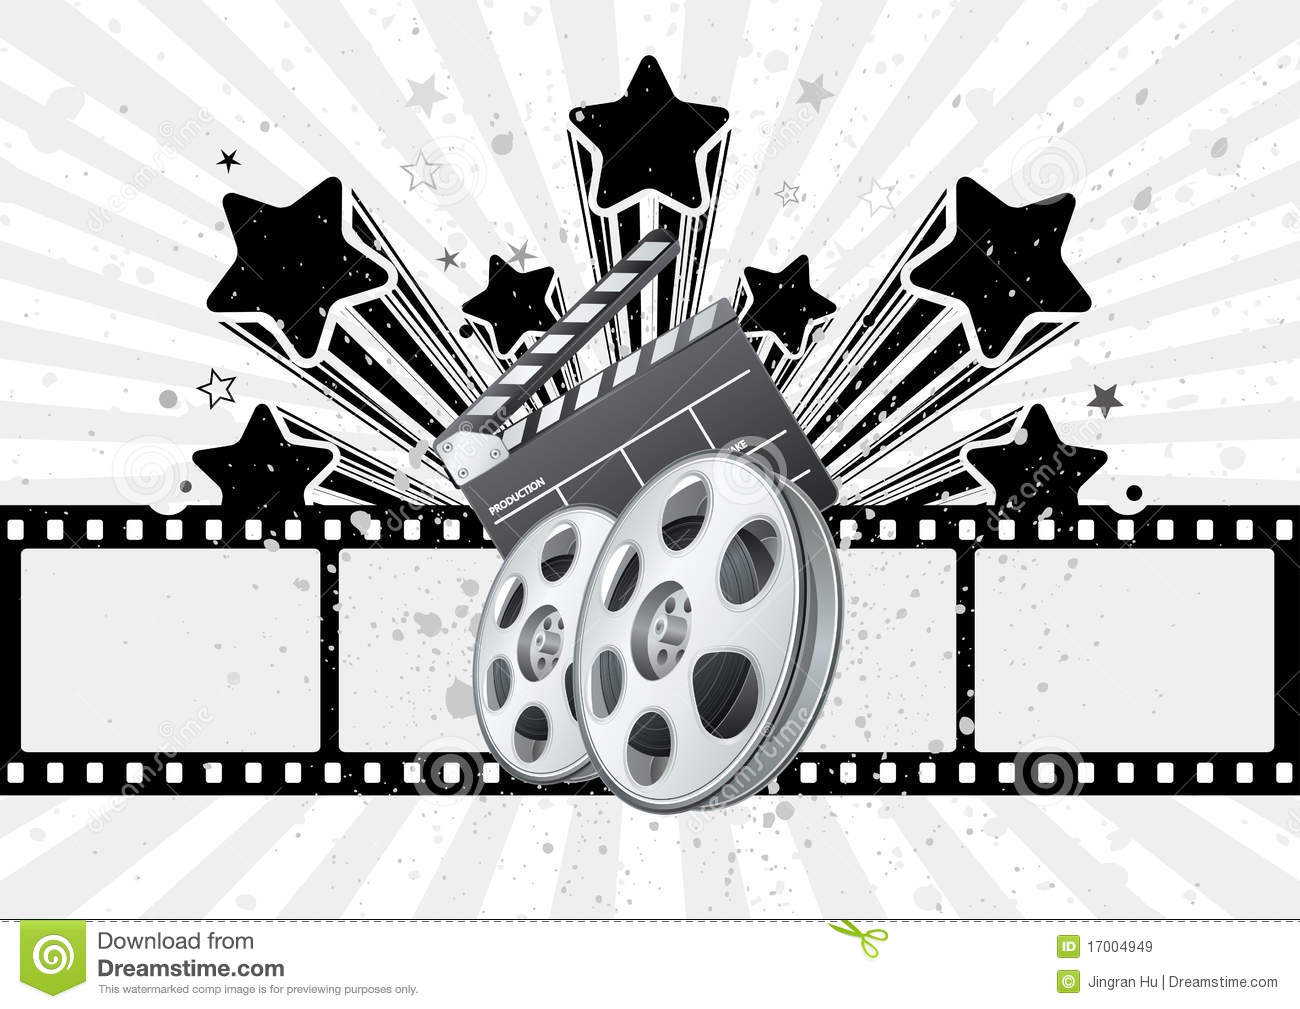 영화 테마 벽지,검정색과 흰색,바퀴,자동차 휠 시스템,삽화,차량